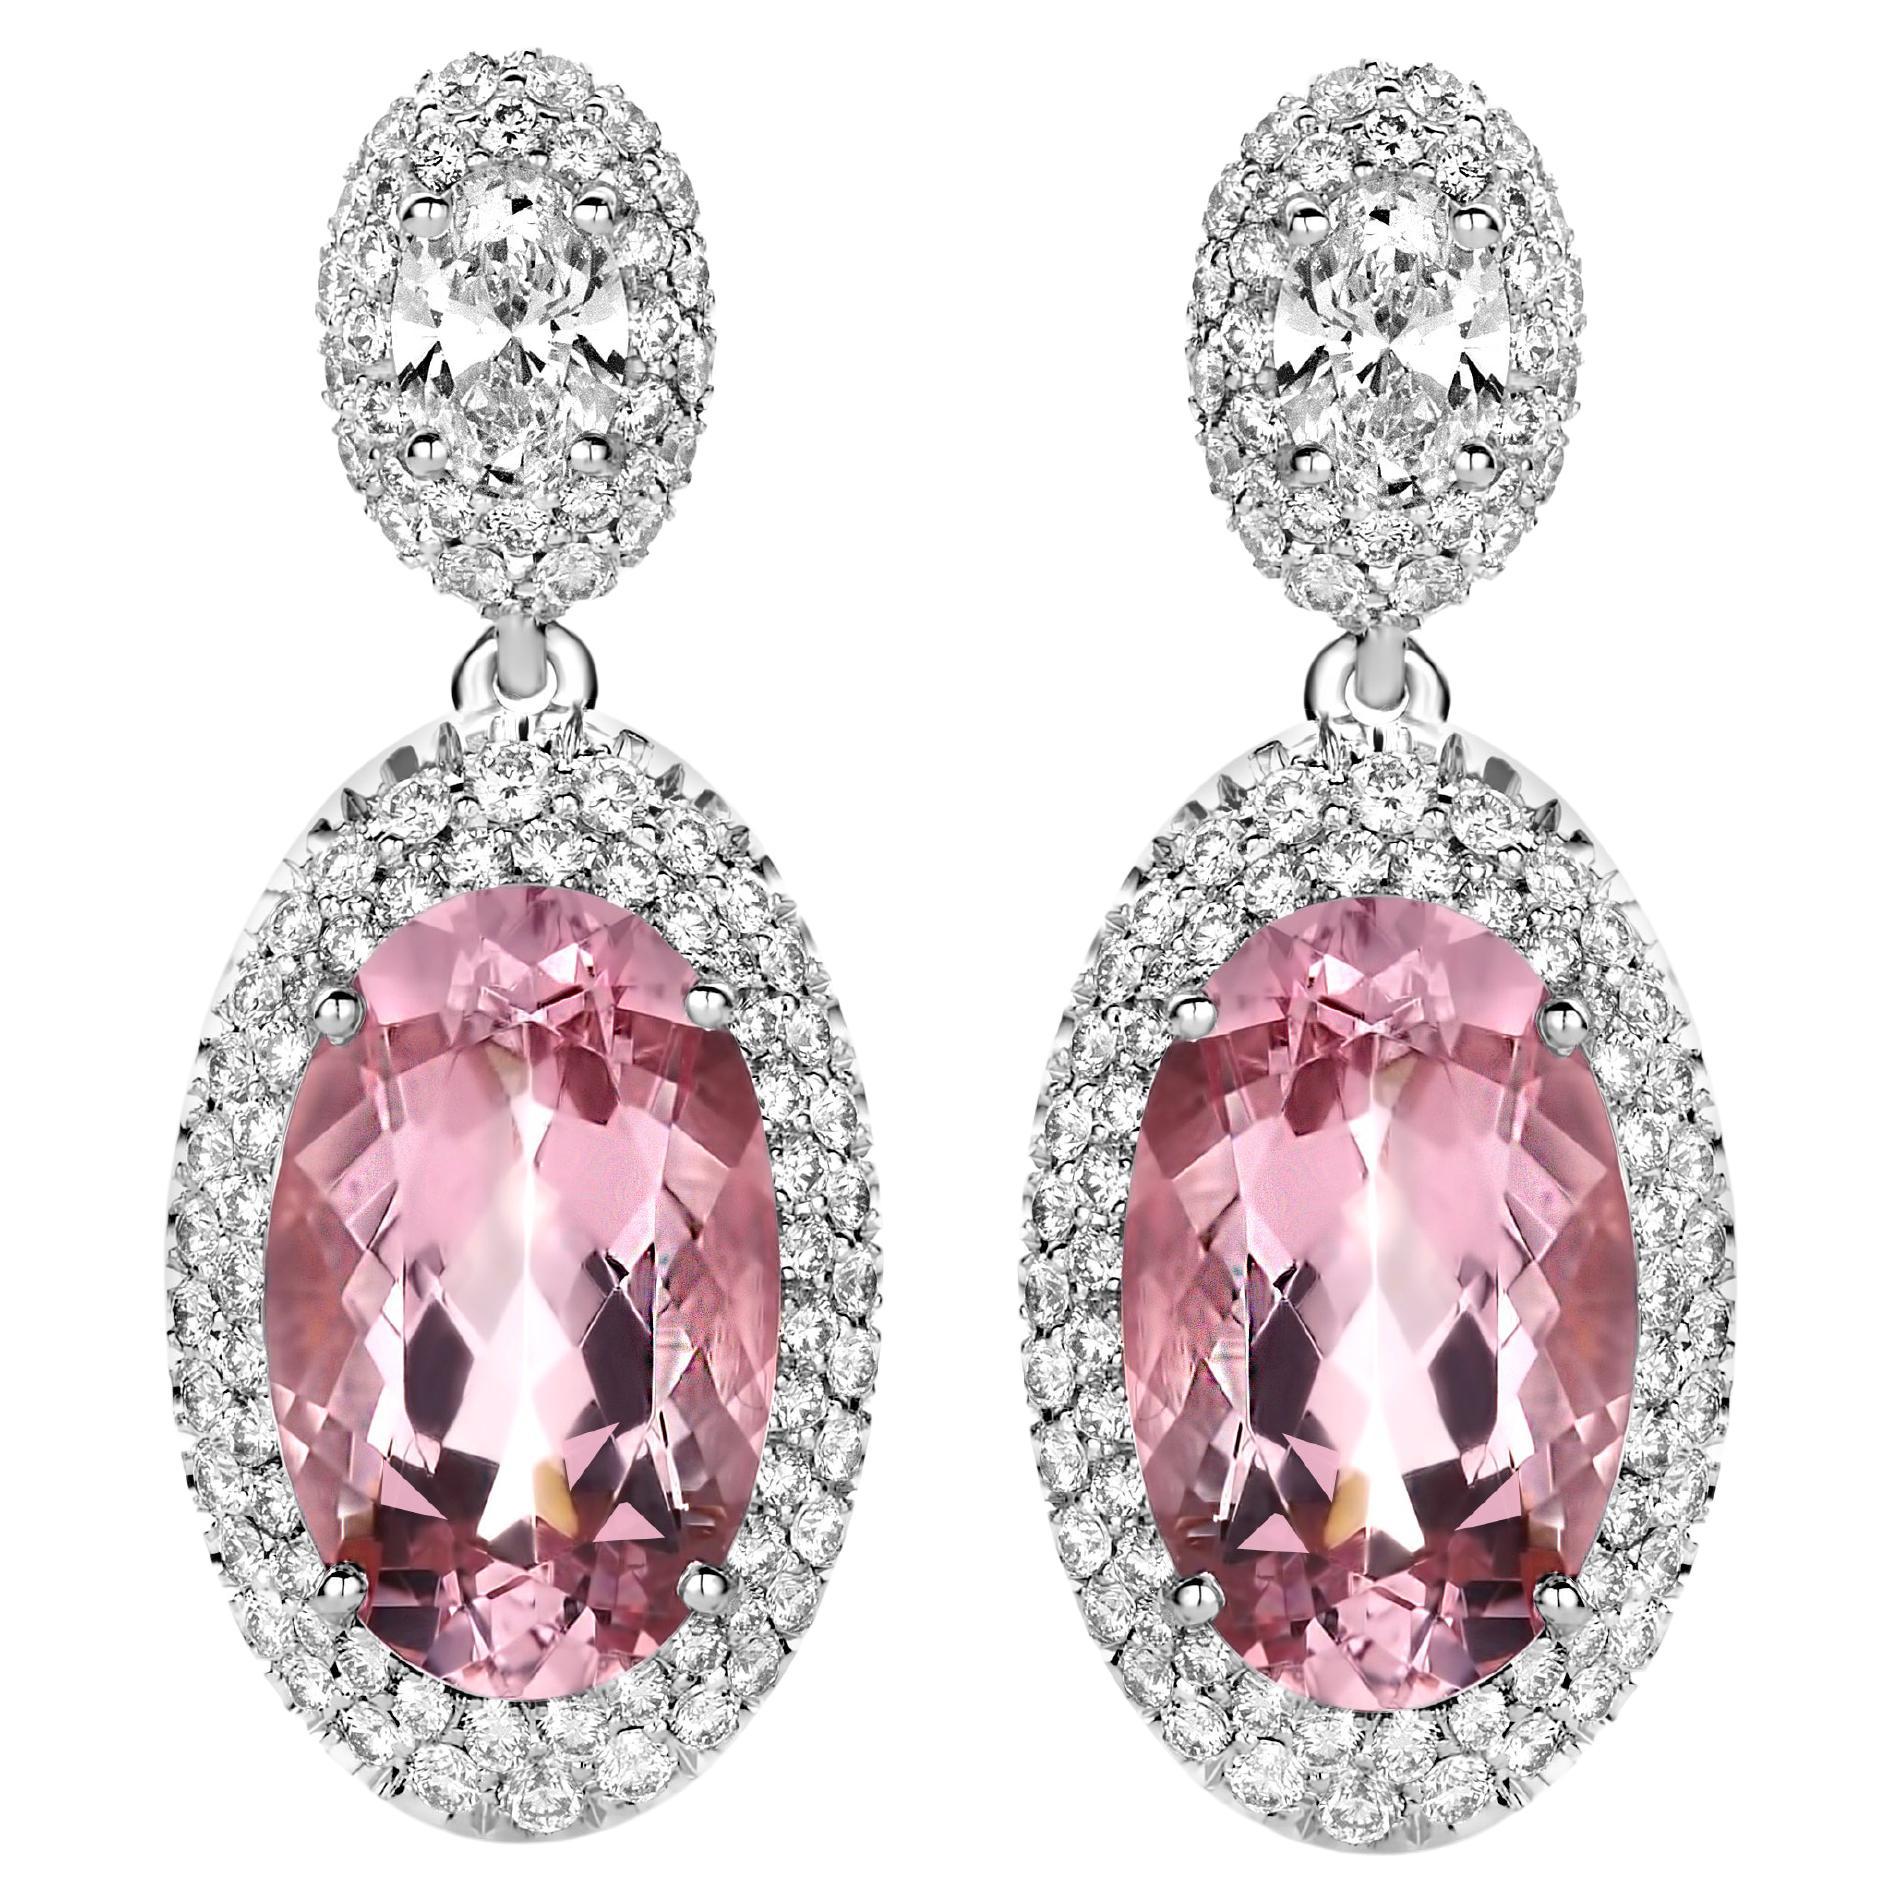 Pendants d'oreilles en or blanc 18 carats avec morganites roses sculptées de 7,83 carats et diamants de 1,70 carat